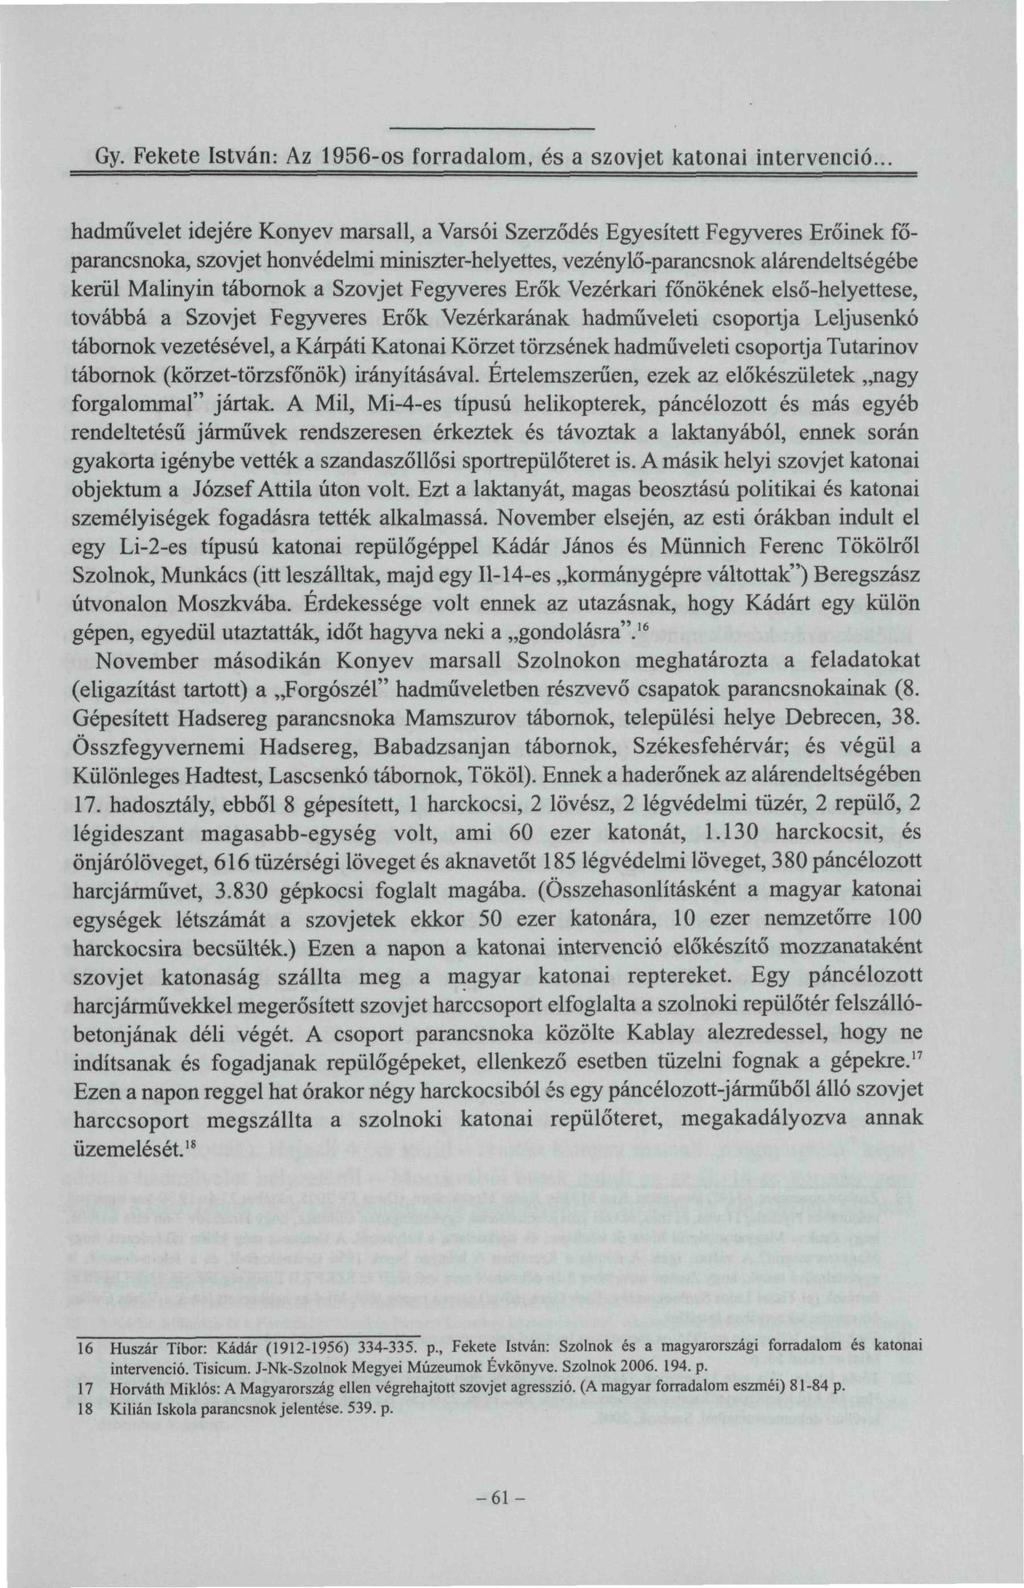 Gy. Fekete István: Az 1956-os forradalom, és a szovjet katonai intervenció.